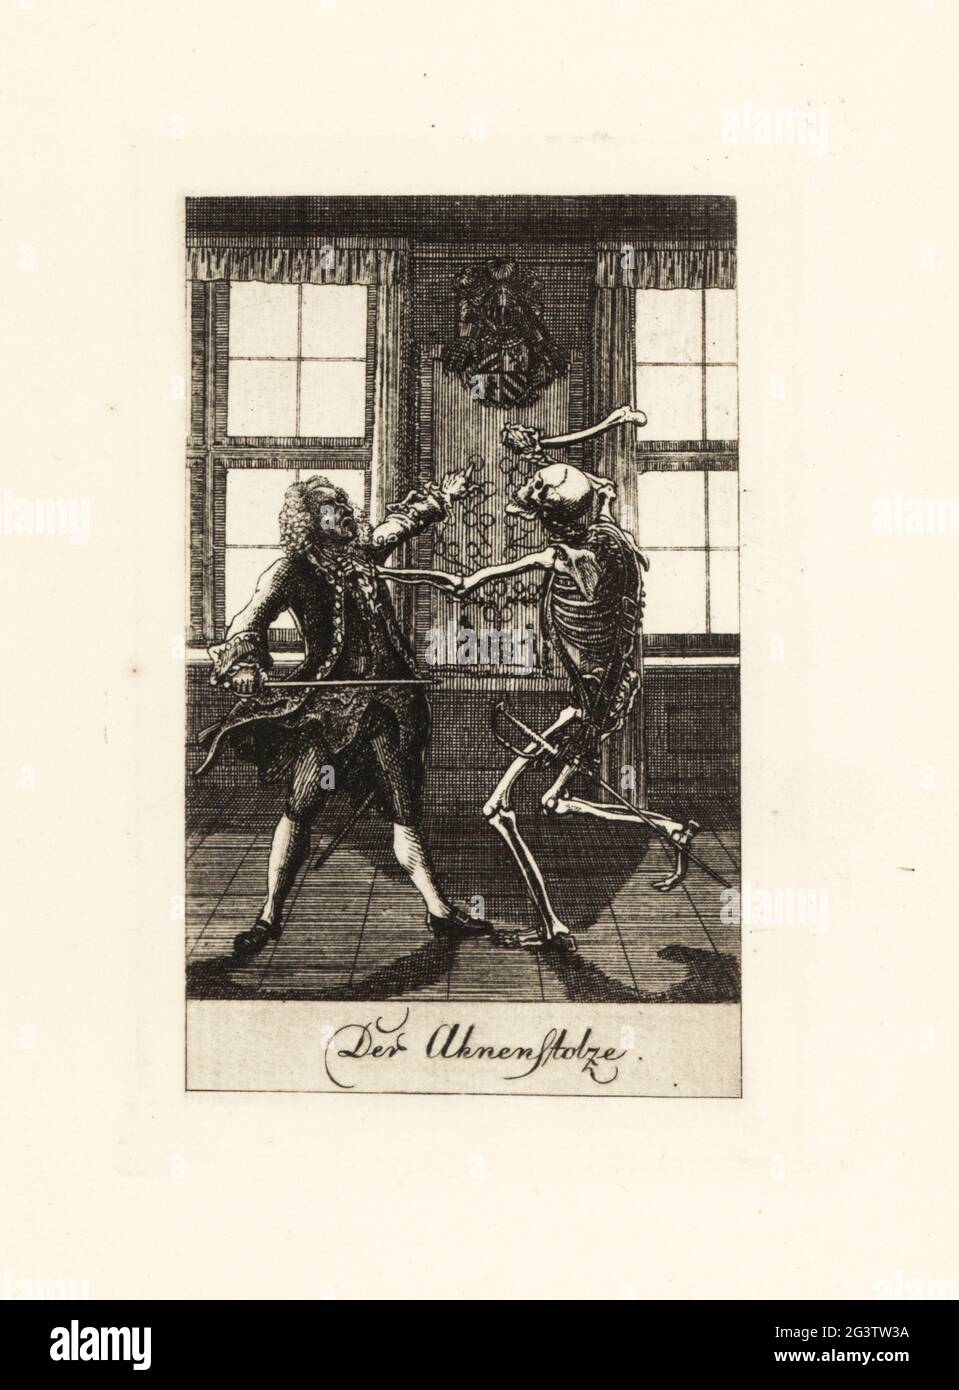 Le squelette de la mort dans un duel avec un noble gentleman. L'artistocrat pointe vers son blason et son pedigree, mais le squelette saisit sa gorge et le bat avec un os de cuisse. Der Ahnenstolze. Gravure en coperplate dessinée et gravée par Daniel Nikolaus Chodowiecki d'une série de danse de la mort, publiée à l'origine dans le calendrier de Lavenburg en 1792. Réimprimé à Totentanz à partir des plaques originales de Walther Nithack-Stahn, Eigenbrodler Verlag, Berlin, 1926. Banque D'Images